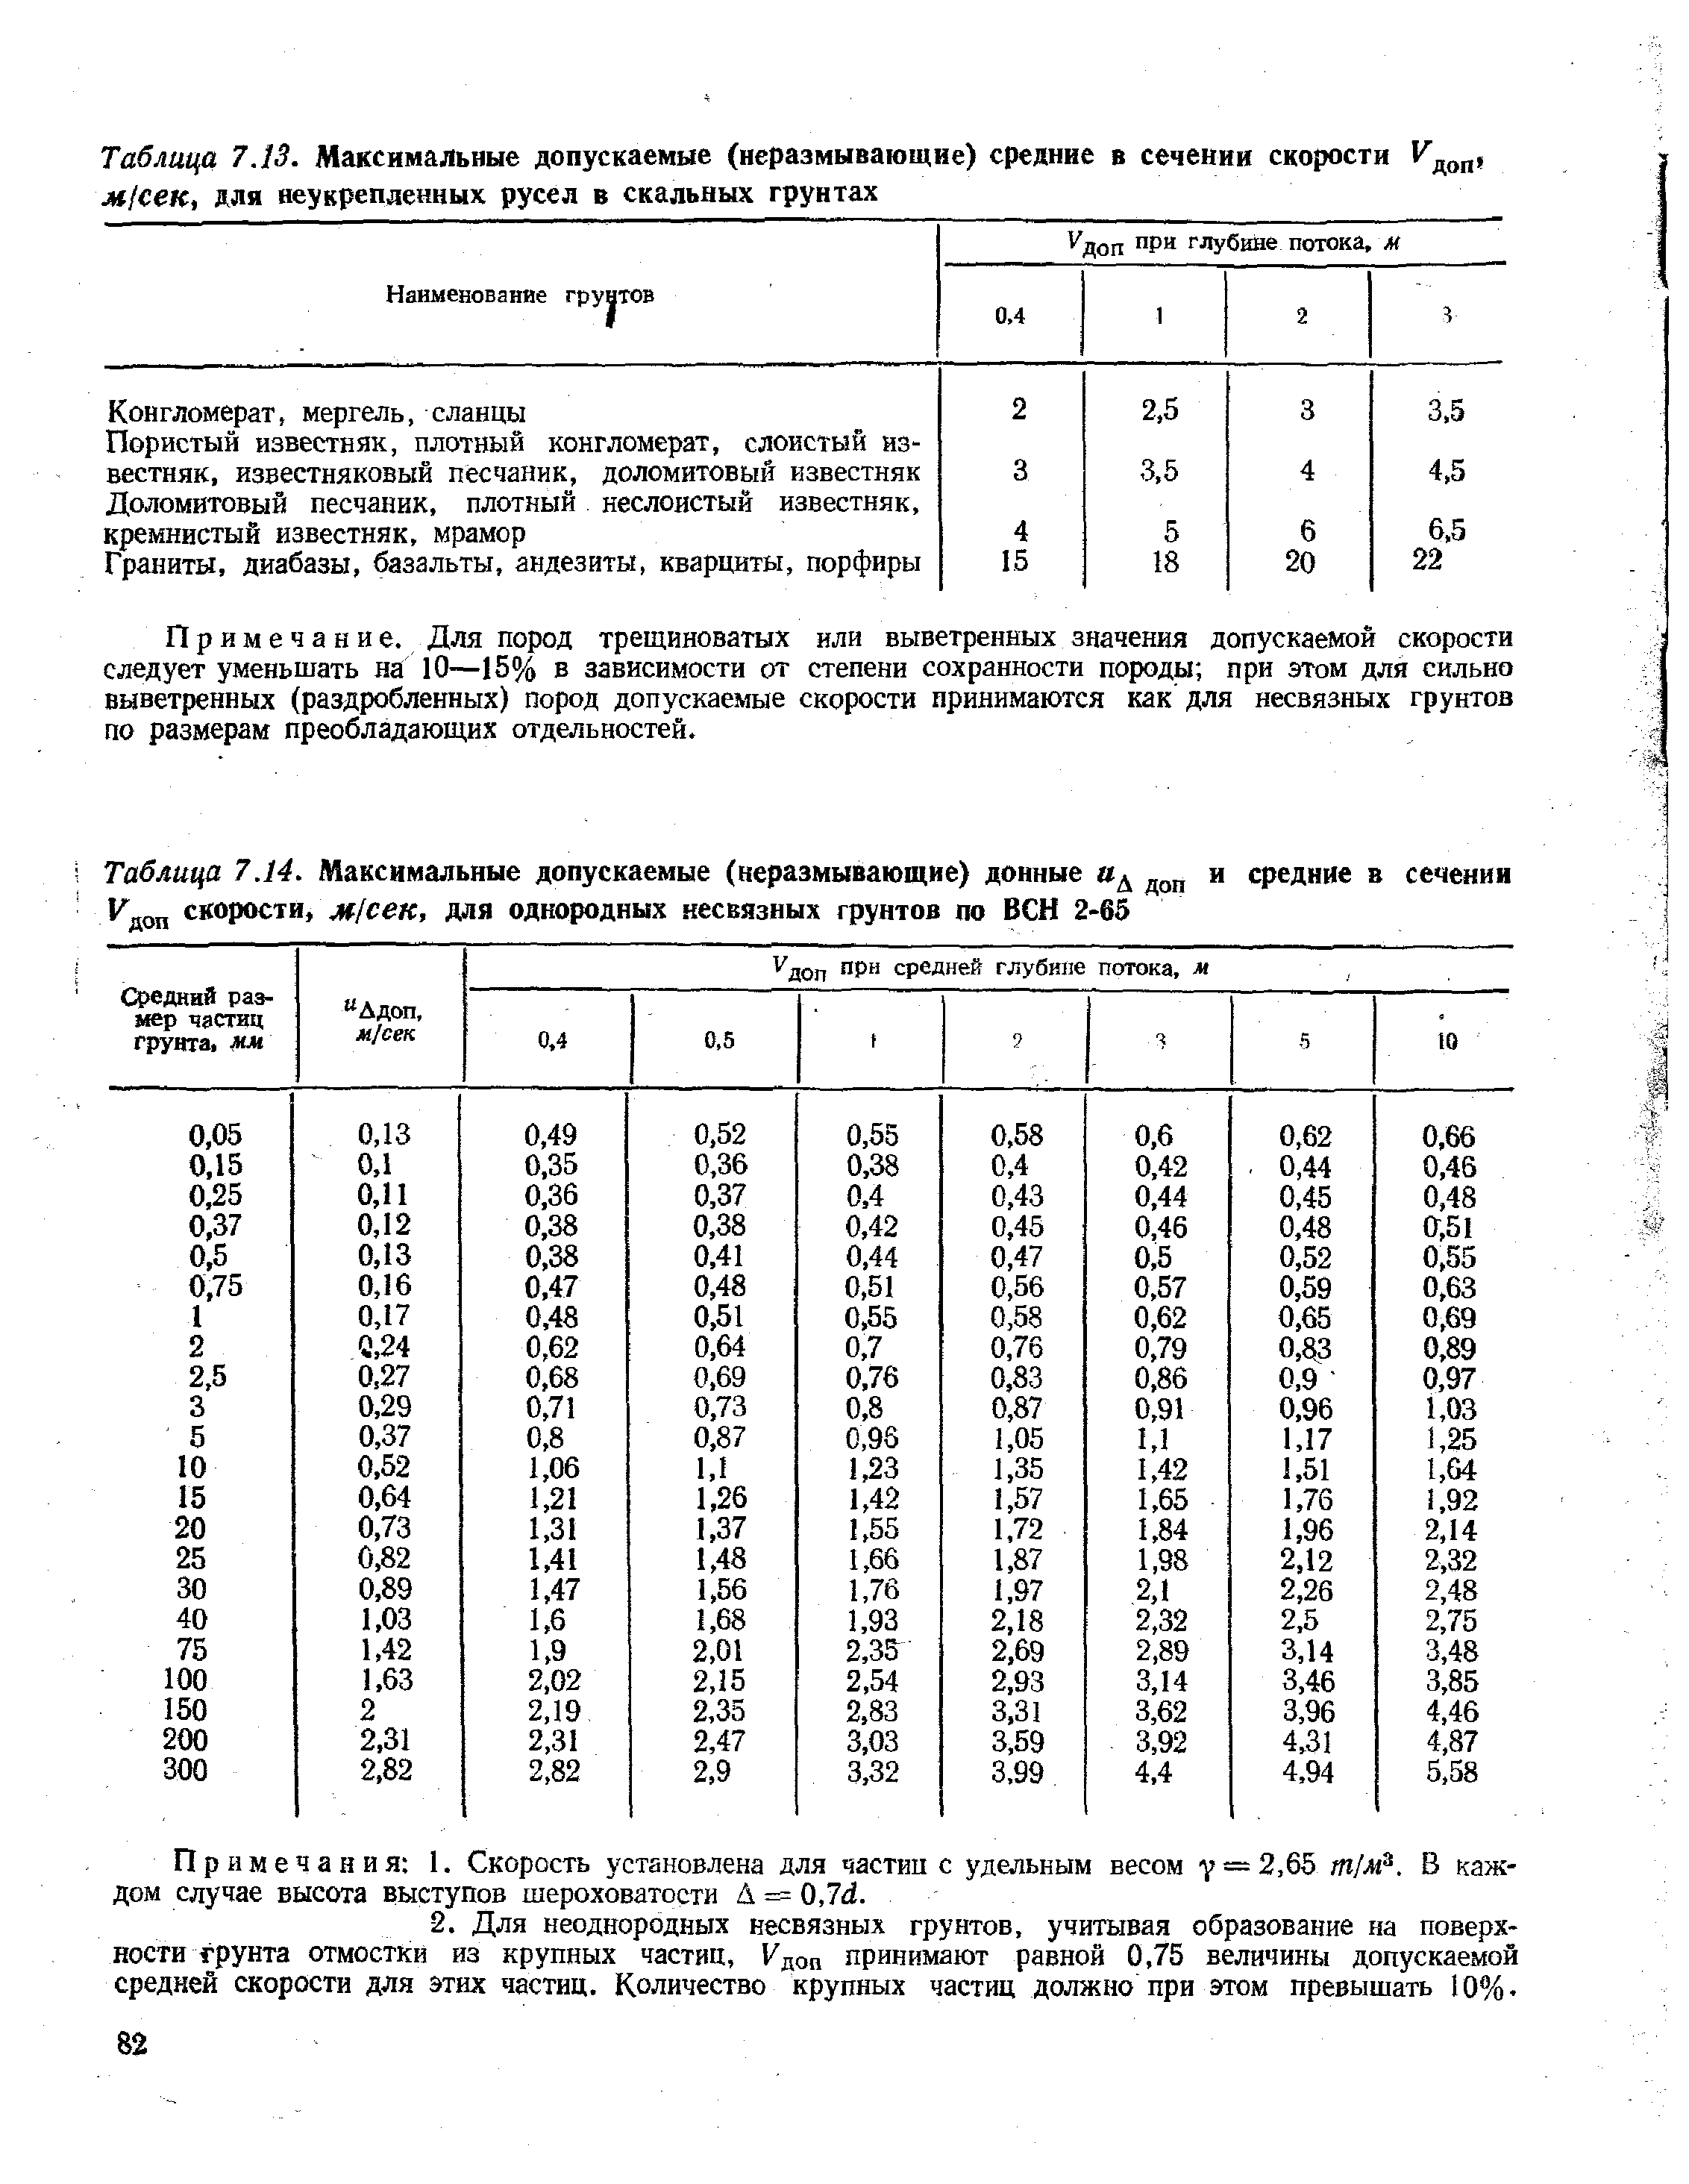 Таблица 7.14. Максимальные допускаемые (неразмывающие) донные д и средние в сечении Кдоп скорости, м/сек, для однородных несвязных грунтов по ВСН 2-65
